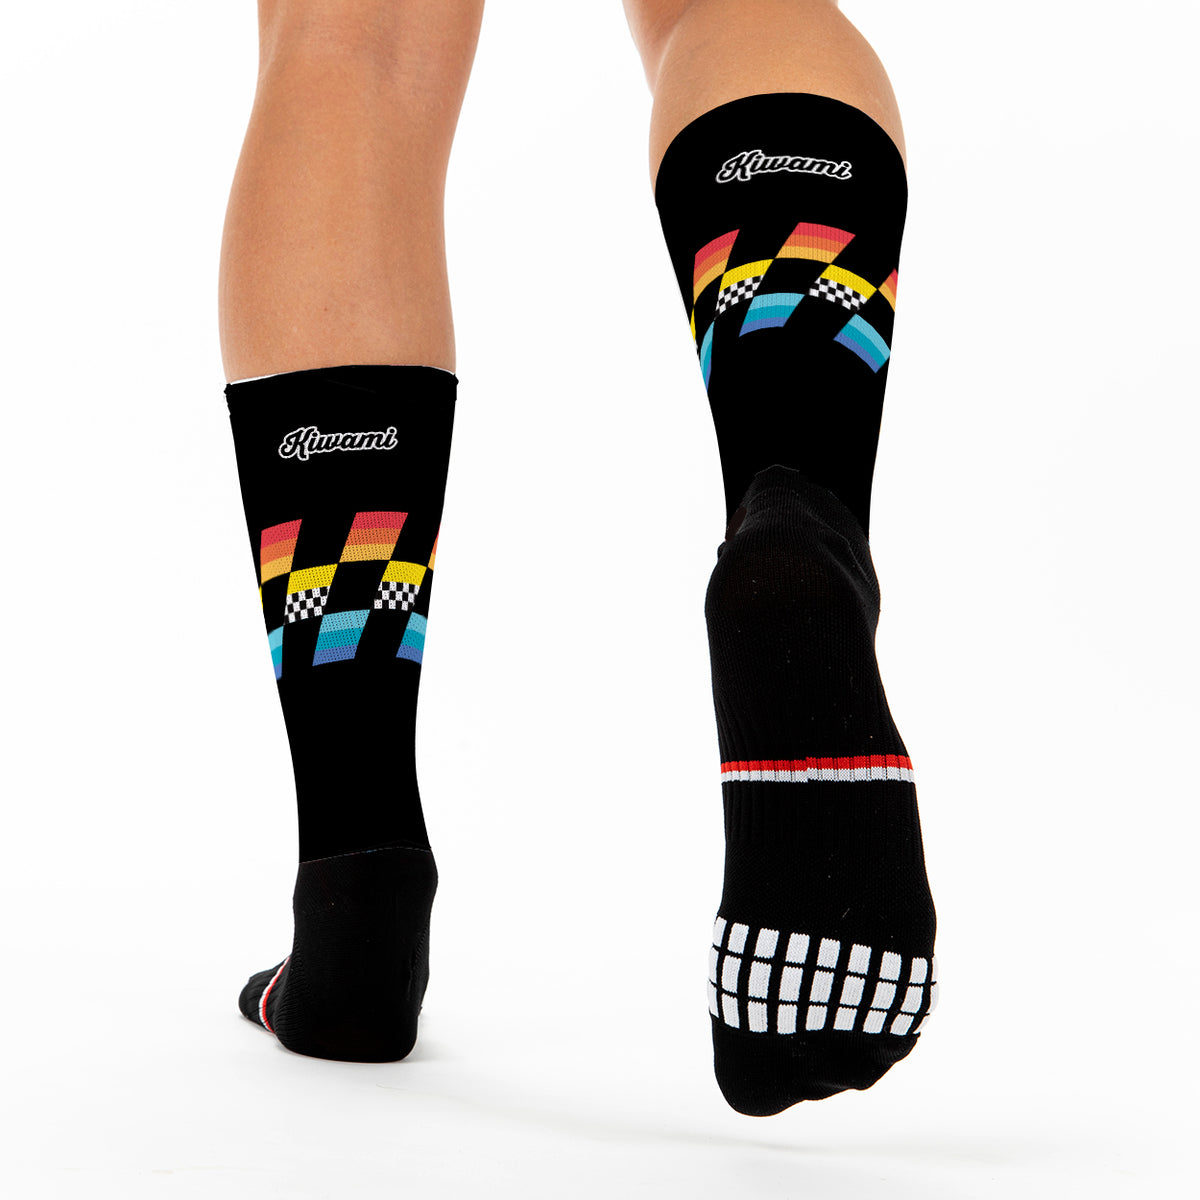 chaussettes running course à pied triathlon maintien du pied anti-échauffement - chaussettes colorées design et style